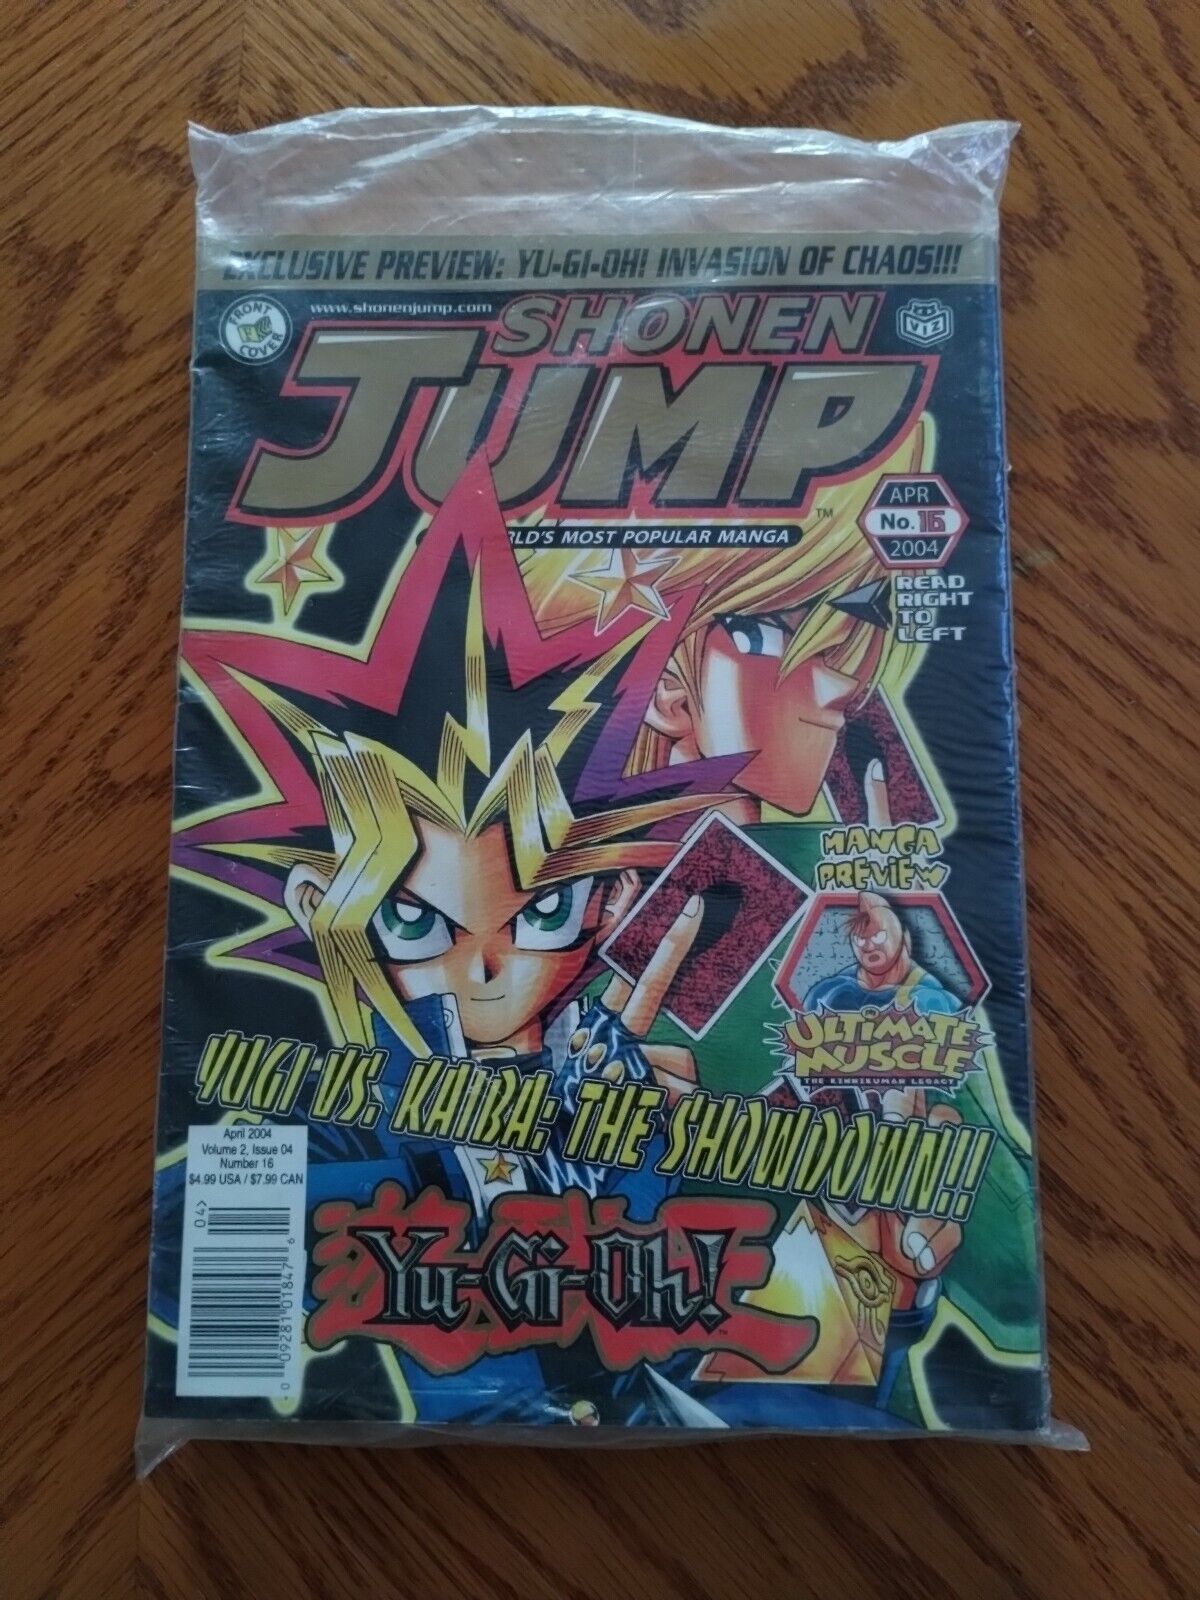 Brand New Sealed Shonen Jump Vol. 2 #16 2004 Yu-Gi-Oh Vs Kiaba The Showdown